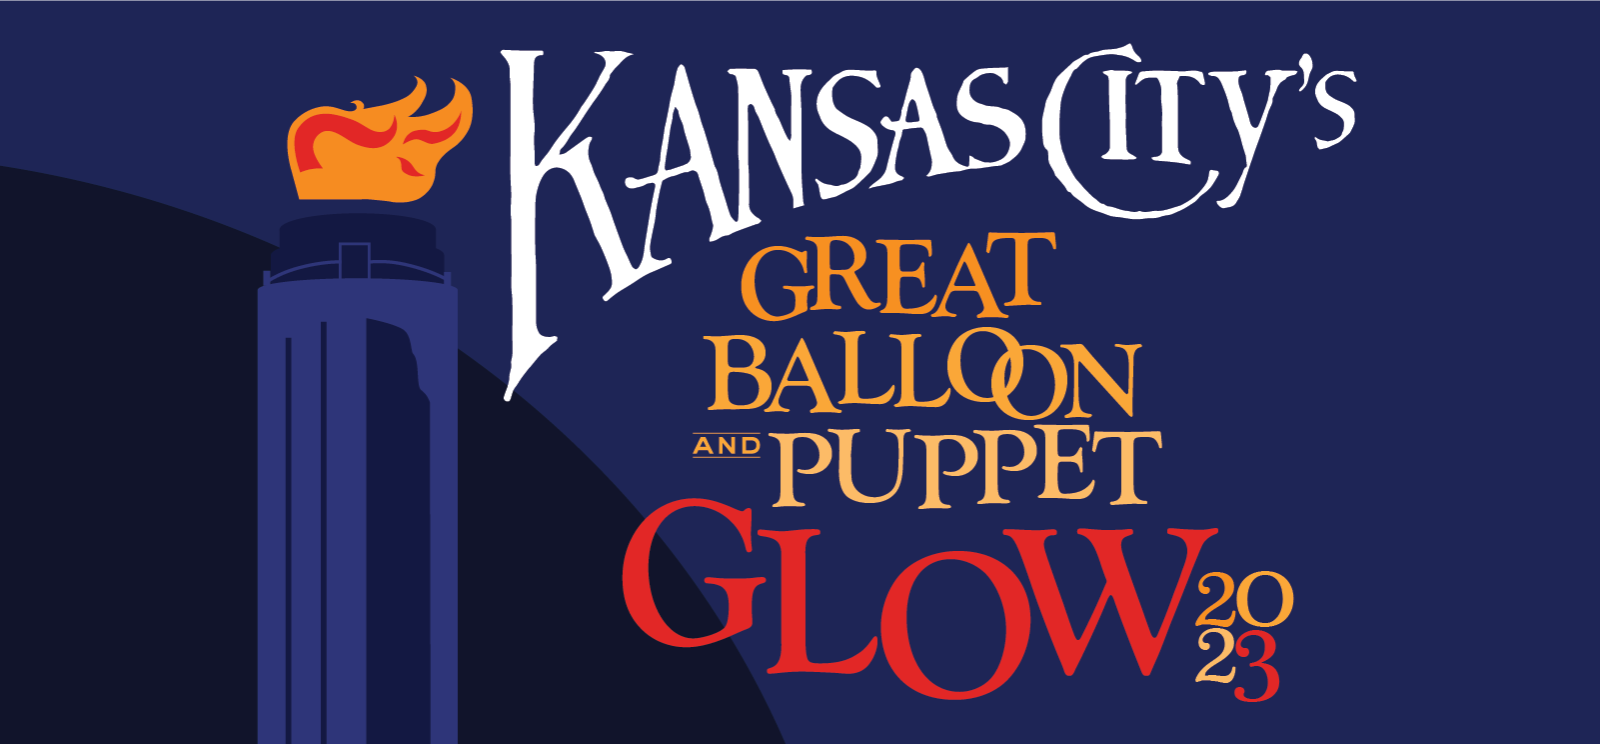 Image : Graphique bleu stylisé de la Liberty Memorial Tower avec une flamme orange sur le dessus. Texte : Great Balloon and Puppet Glow de Kansas City 2023